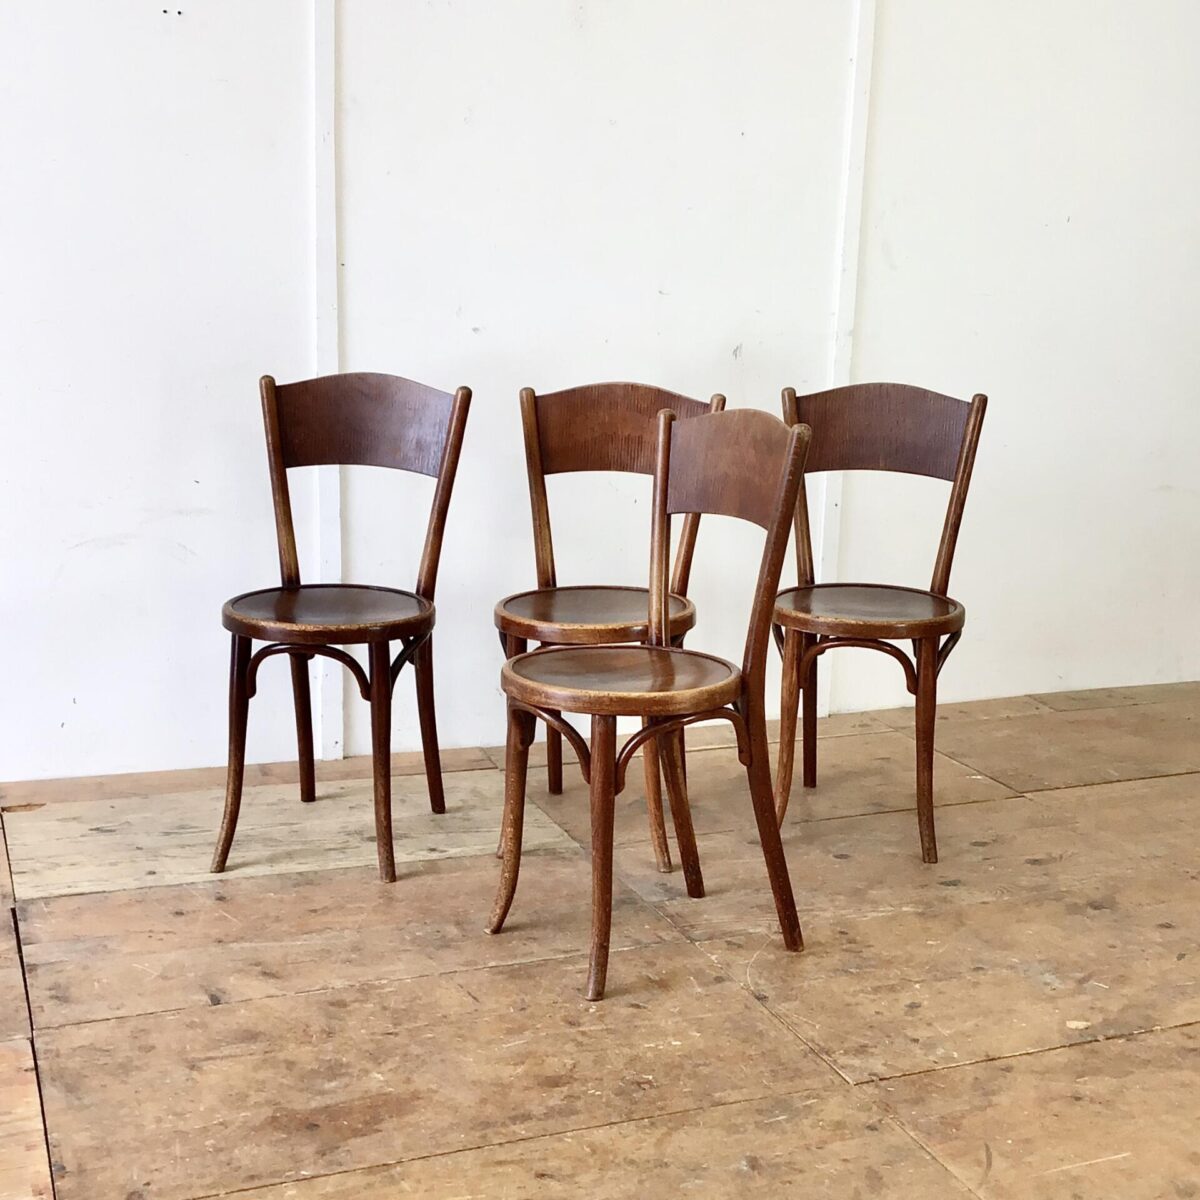 4er Set Bistrostühle von Thonet. Die Stühle sind in in stabilem überarbeiteten Zustand. Vorderbeine teilweise frisch eingeleimt. Warme Dunkelbraune Alterspatina.